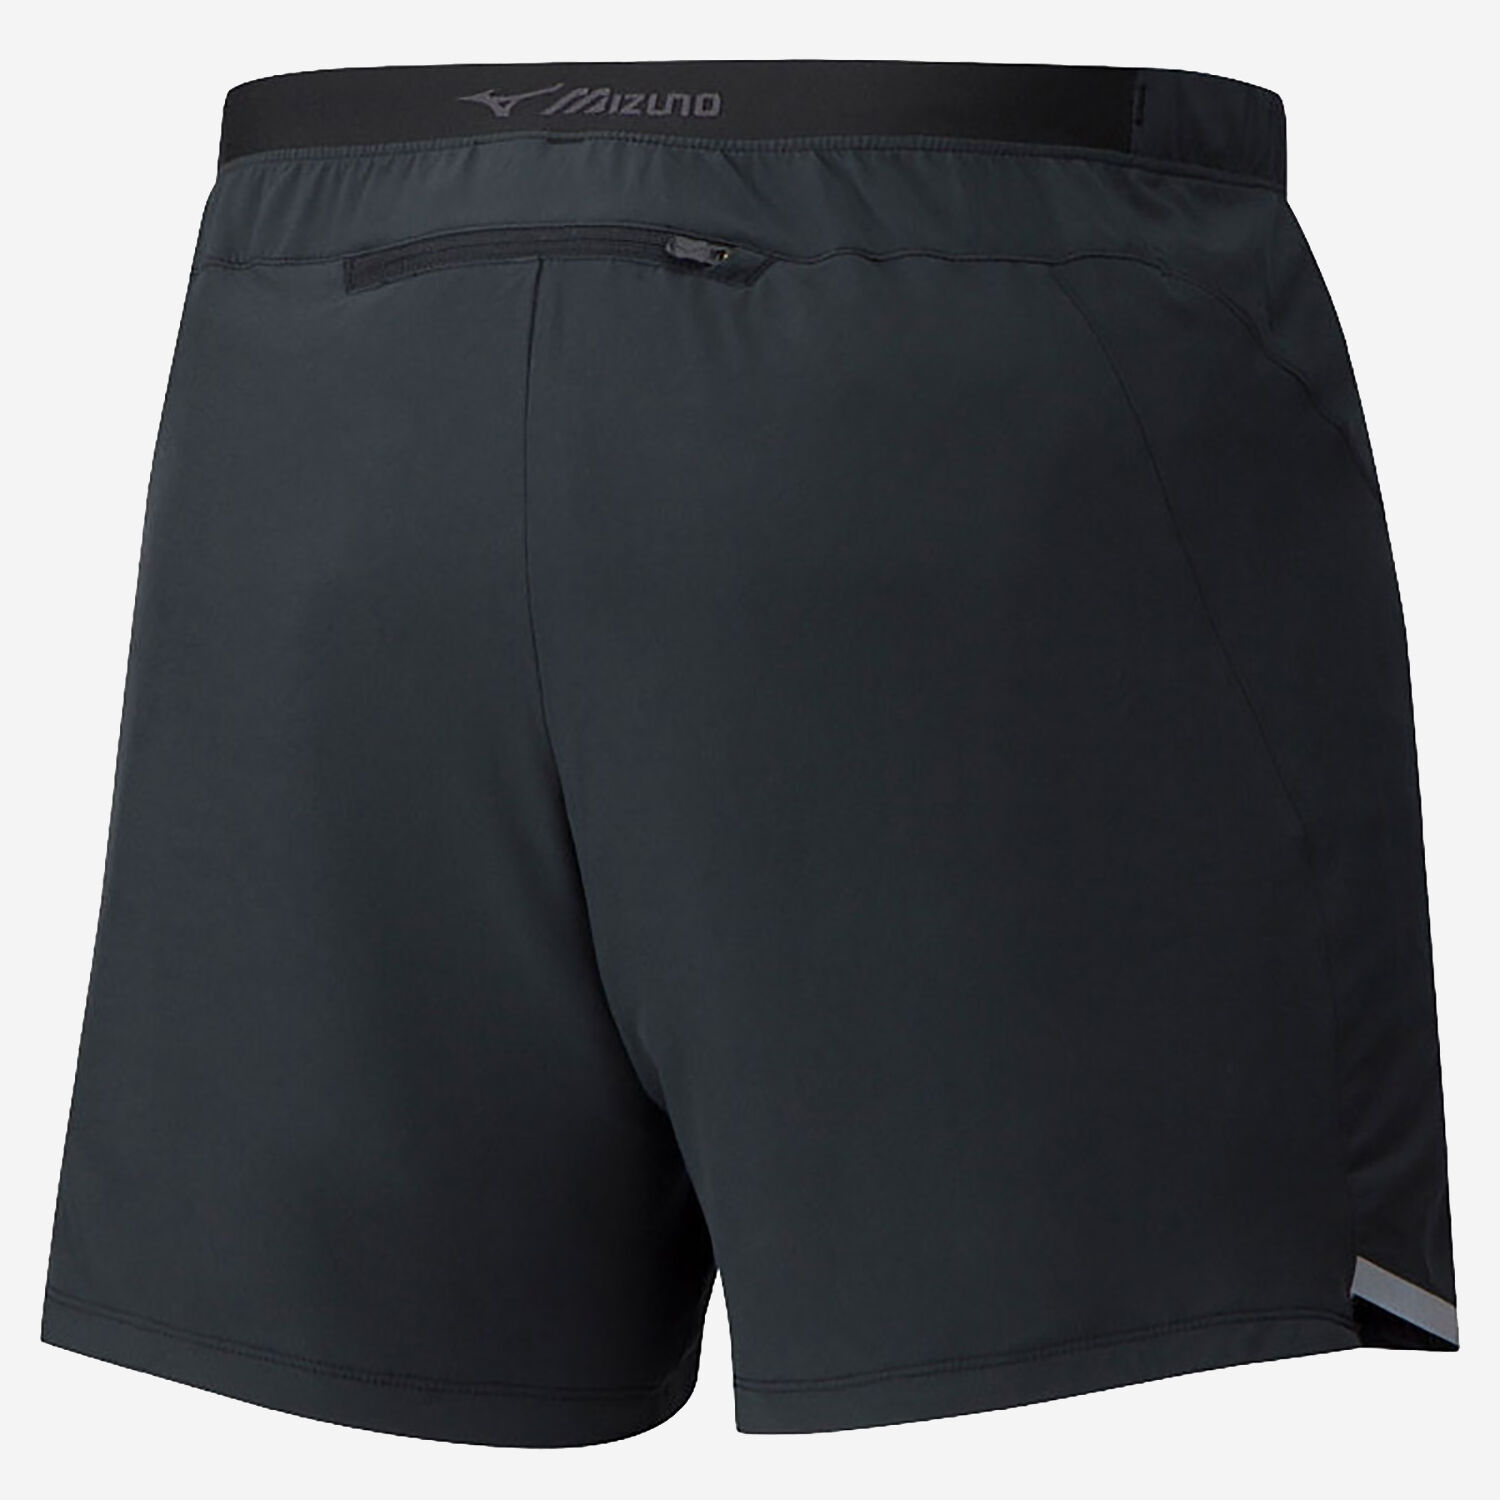 Mizuno Premium Aero 4.5 shorts RUNKD online running store